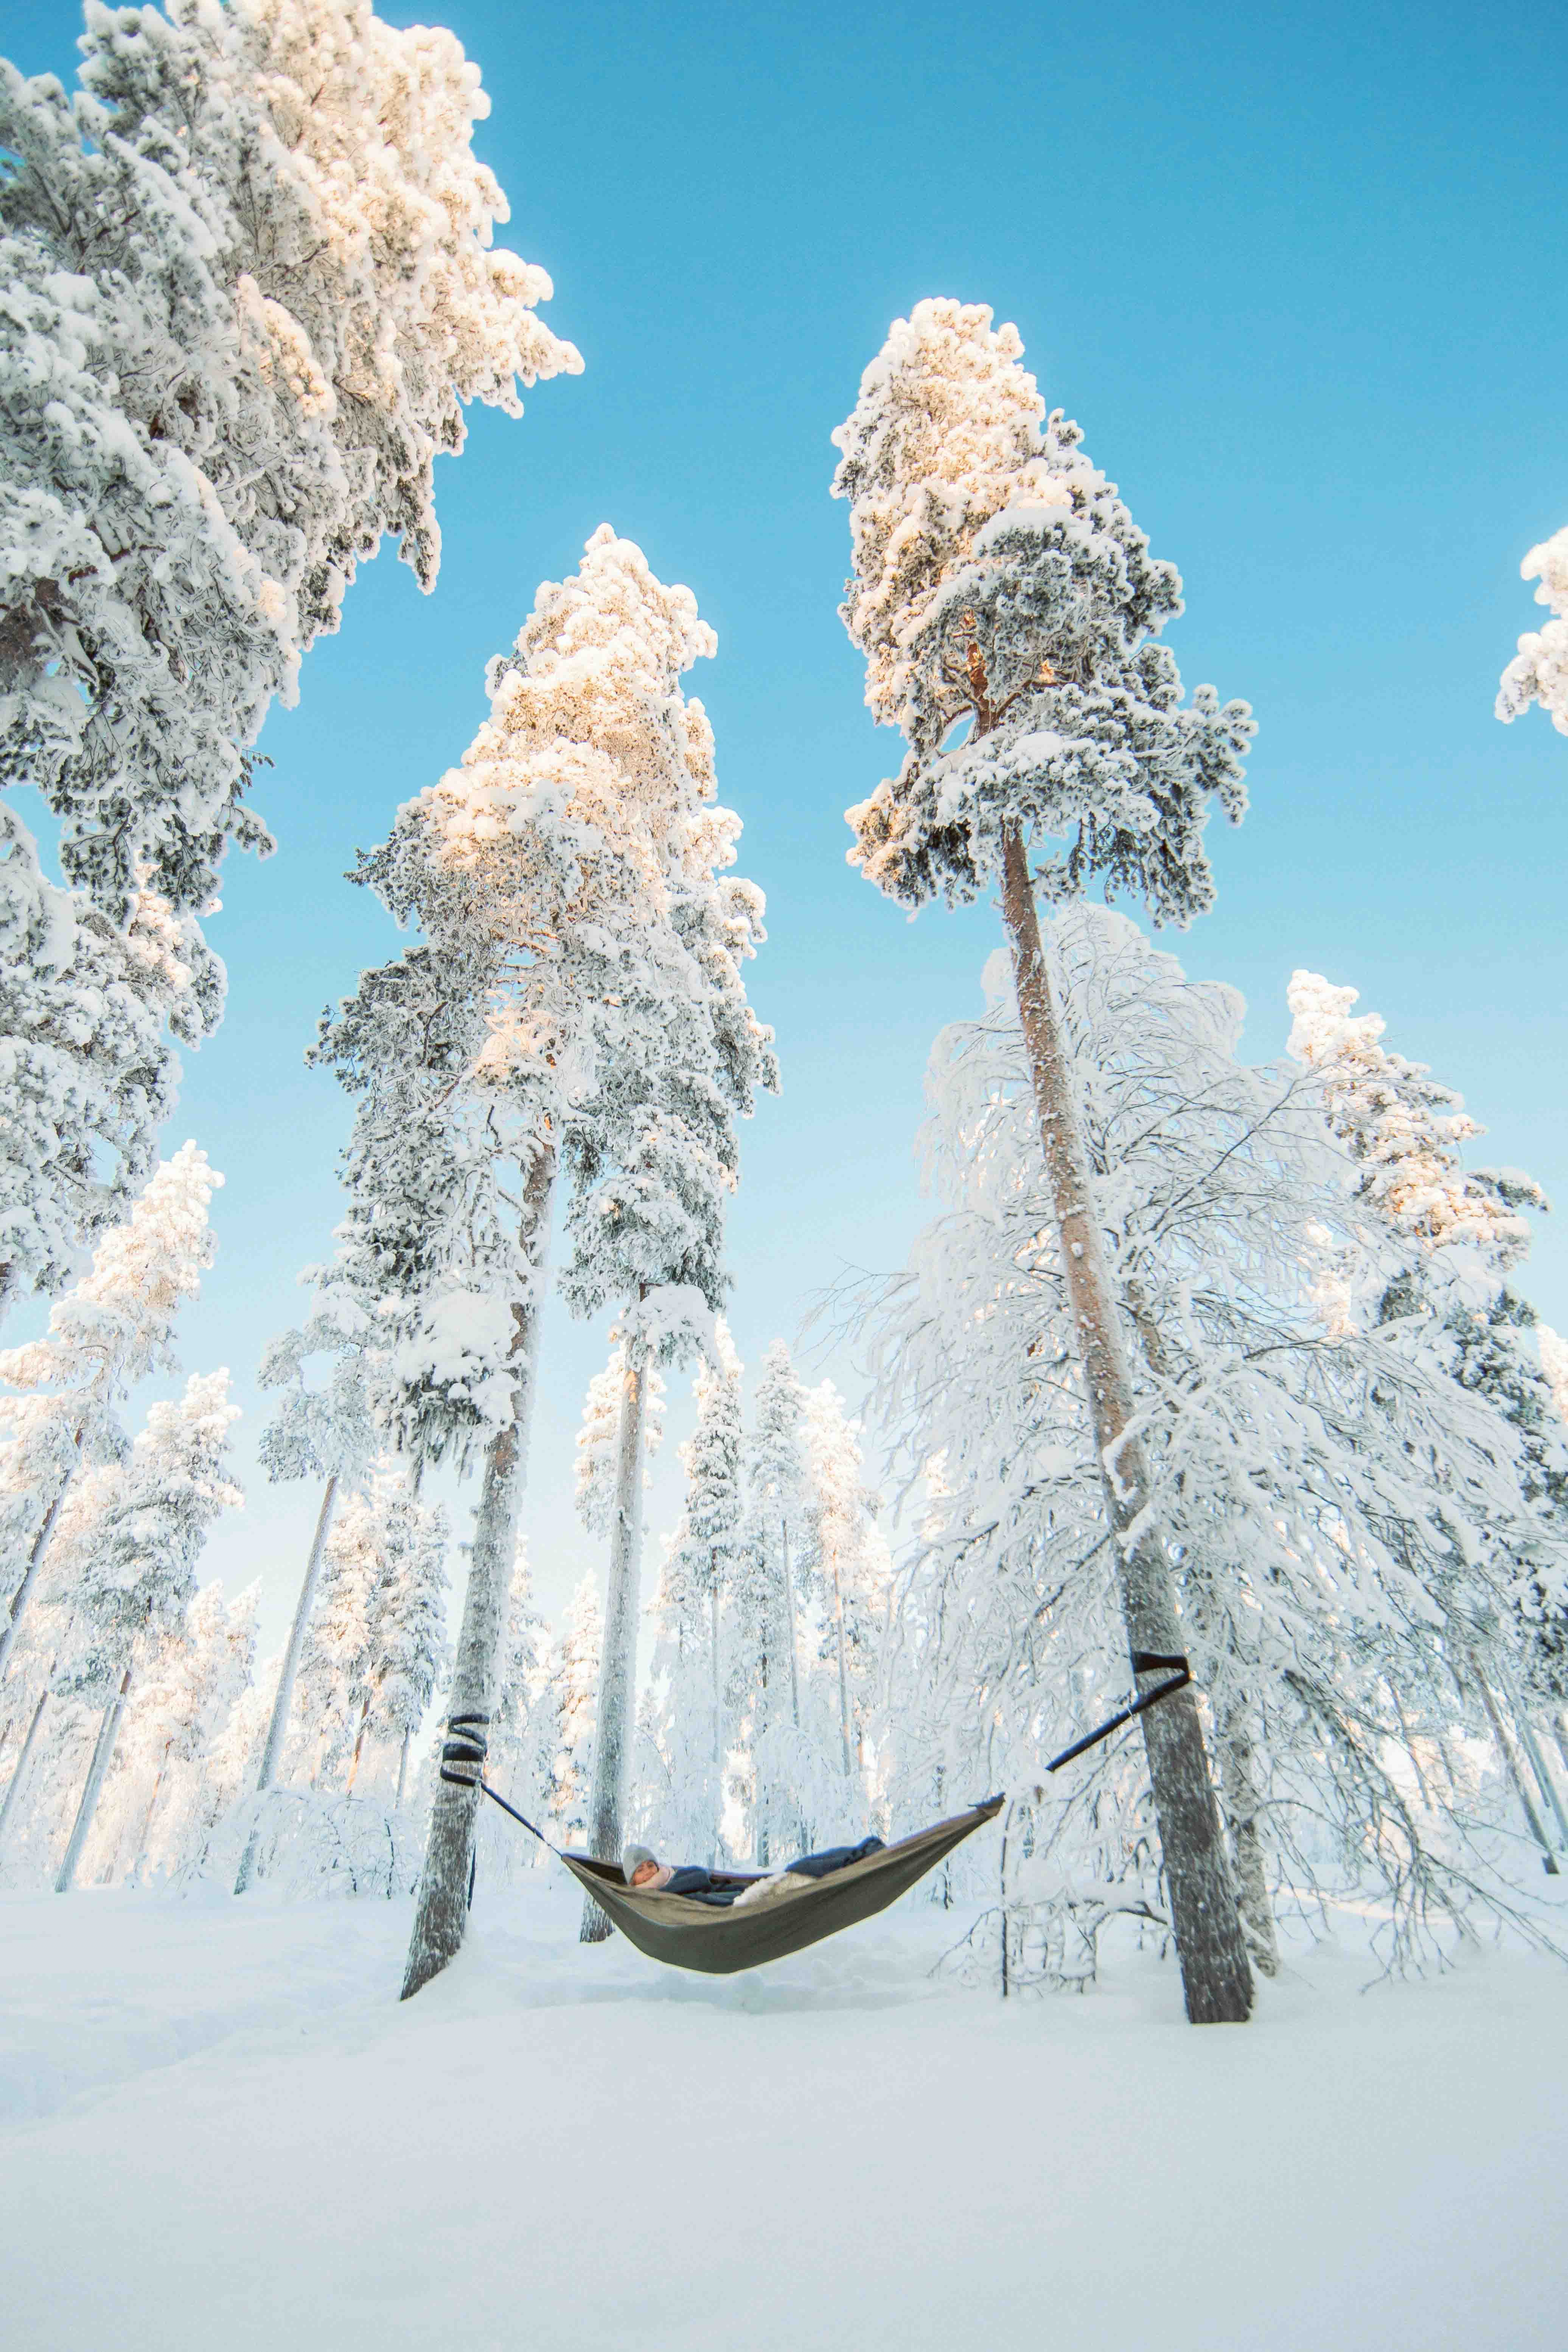 Человек в гамаке между двумя заснеженными деревьями над покрытой снегом землей